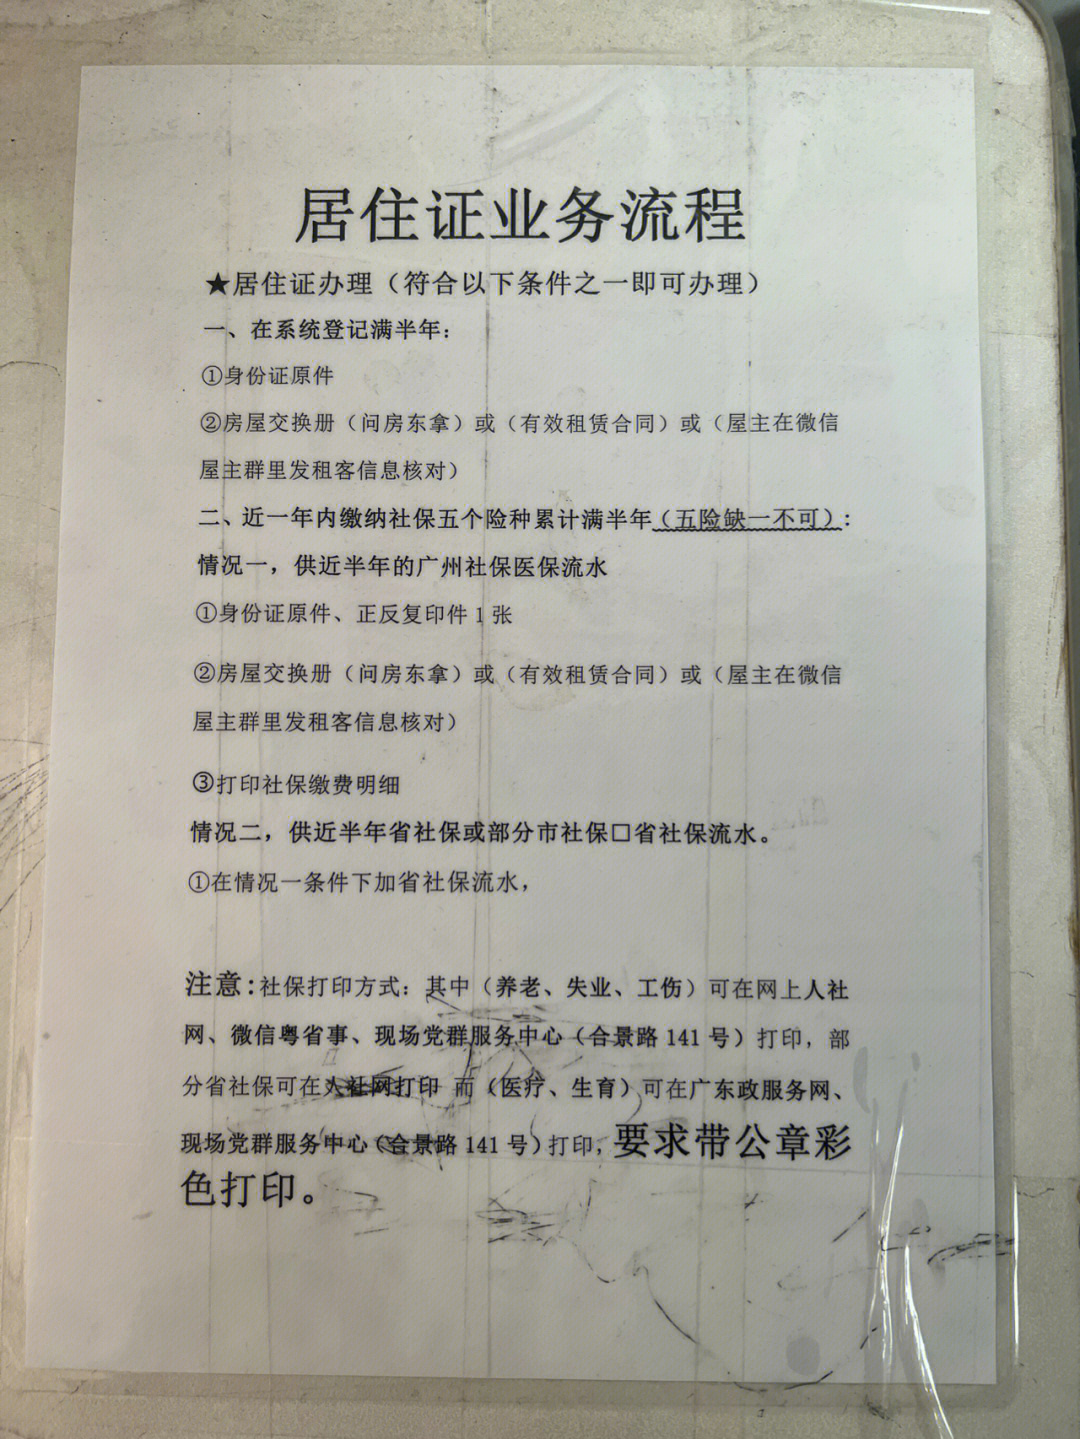 广州居住证详细流程(首次办理/过期续签)